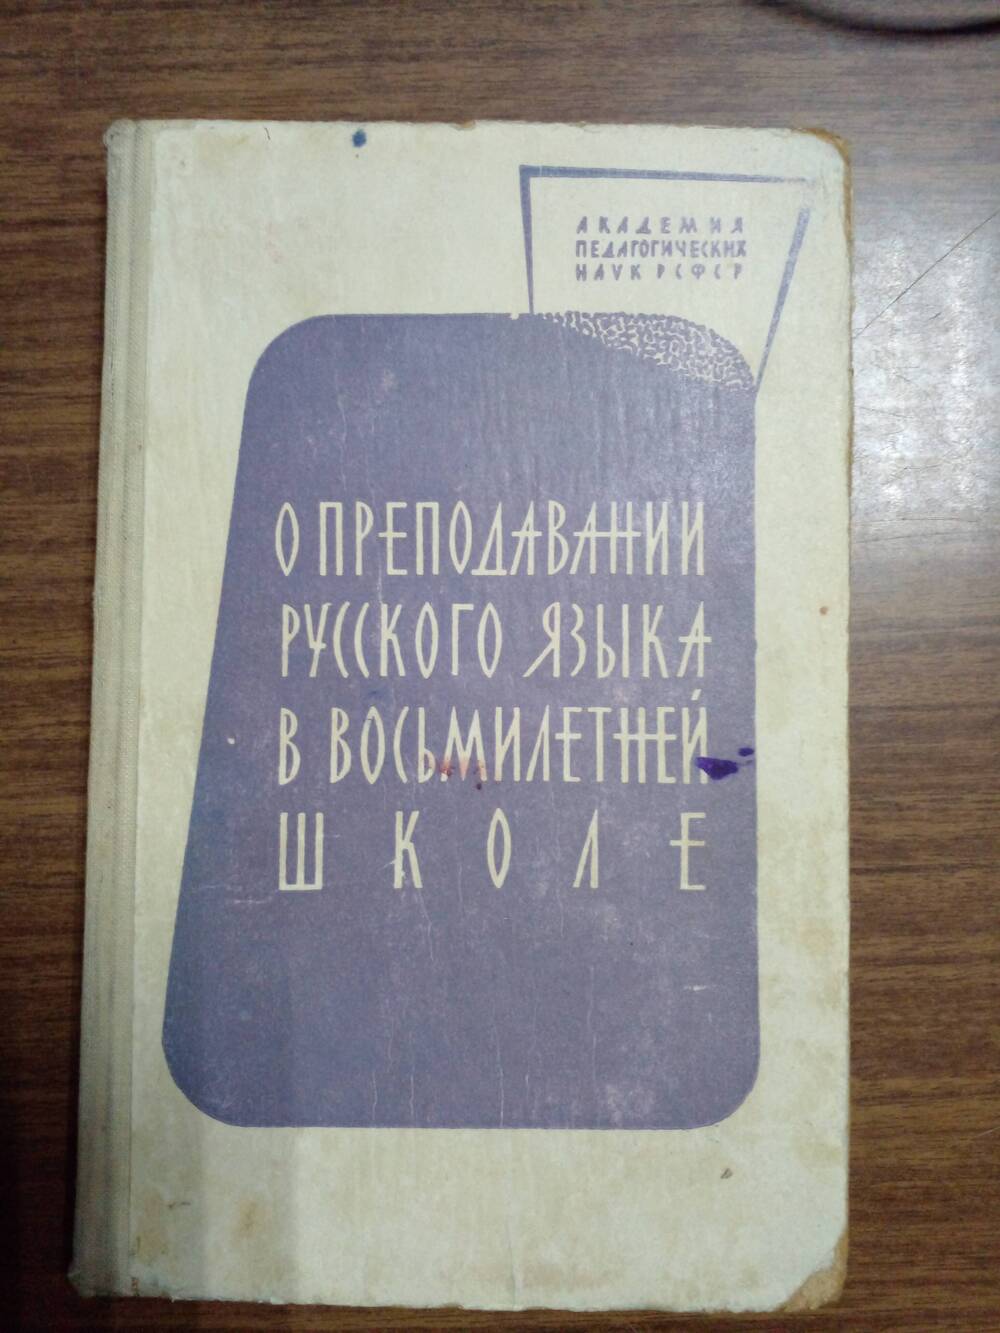 Книга «О преподавании русского языка в восьмилетней школе»